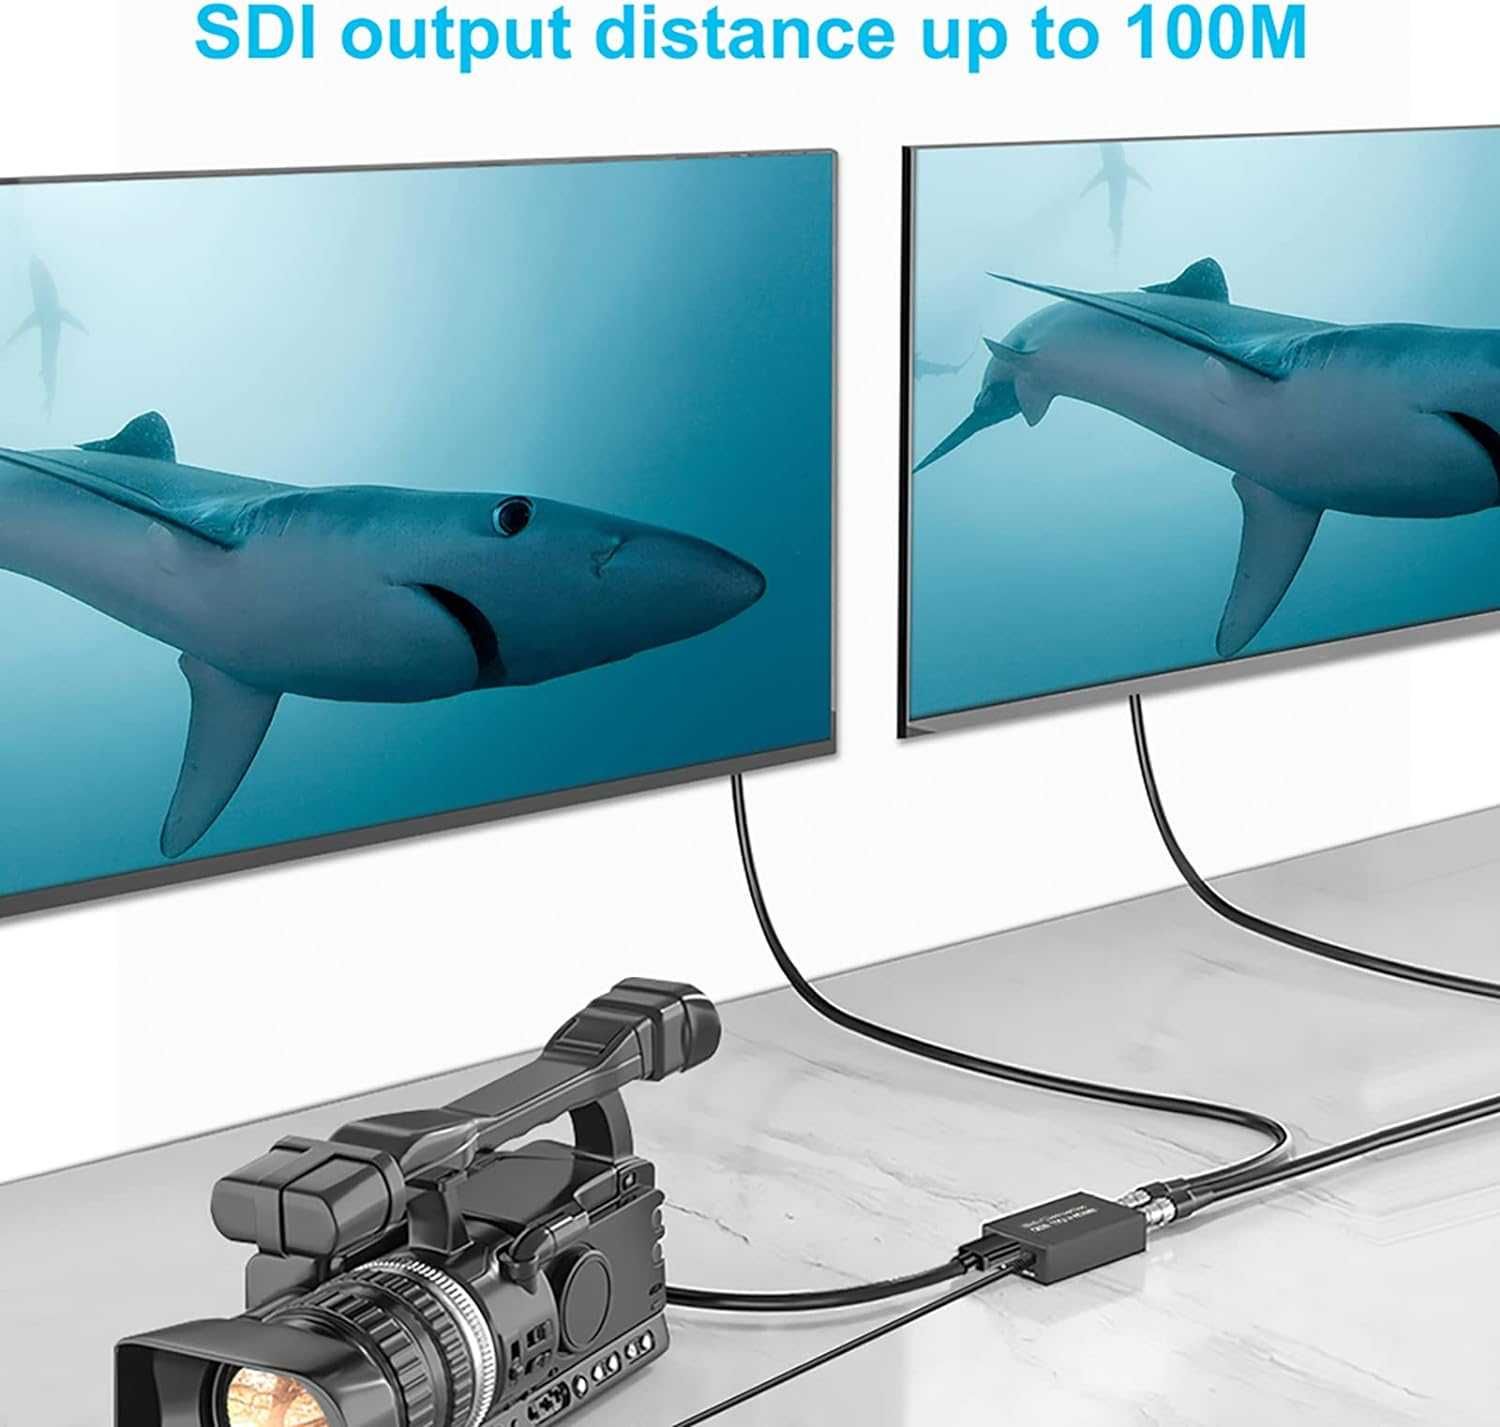 1080P Konwerter HDMI na SDI